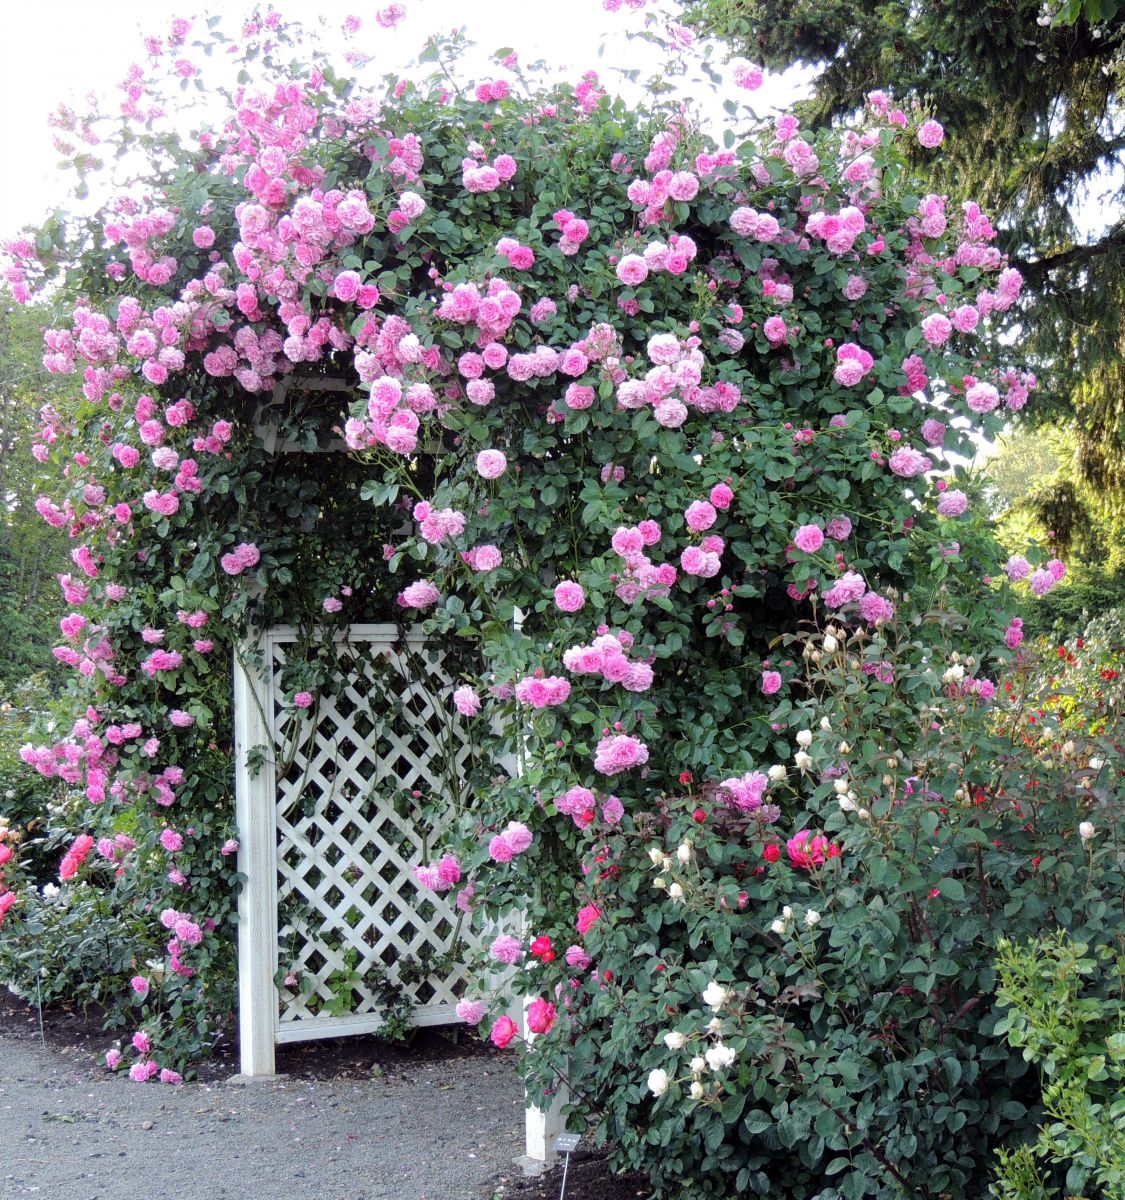 hàng rào hoa hồng đẹp như mơ